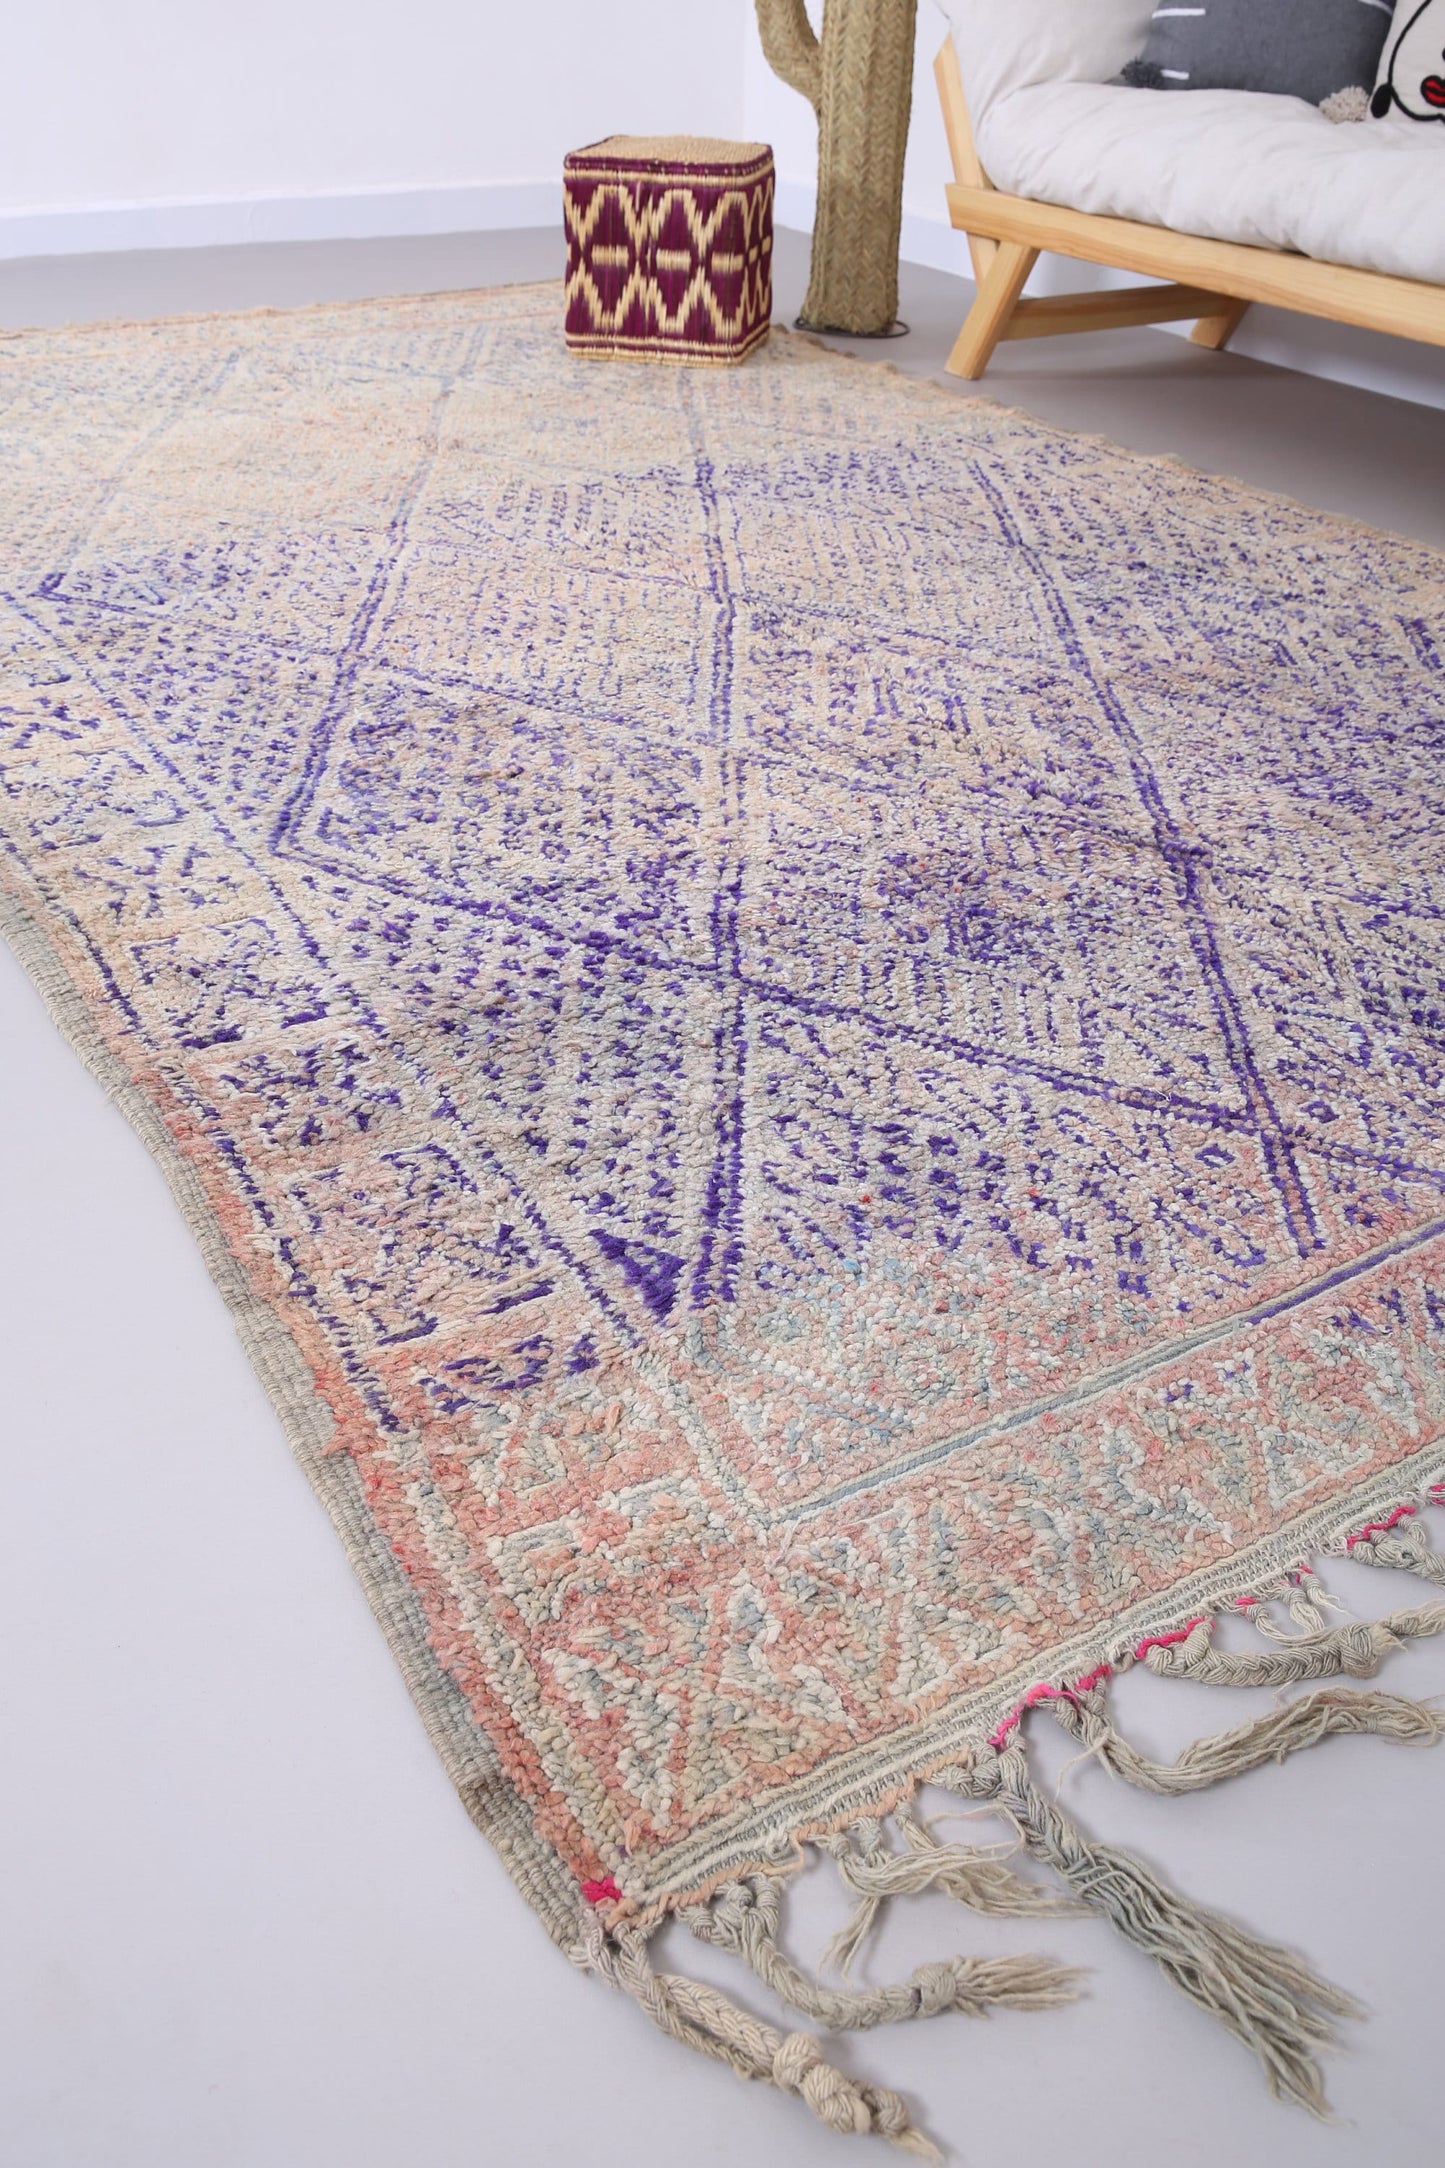 Großer Beni Mguild Teppich 6,4 FT x 11 FT - marokkanischer Vintage Teppich - handgemachter Tribal Teppich - alter Boho Teppich - marokkanischer Berberteppich - 70er Jahre Teppich